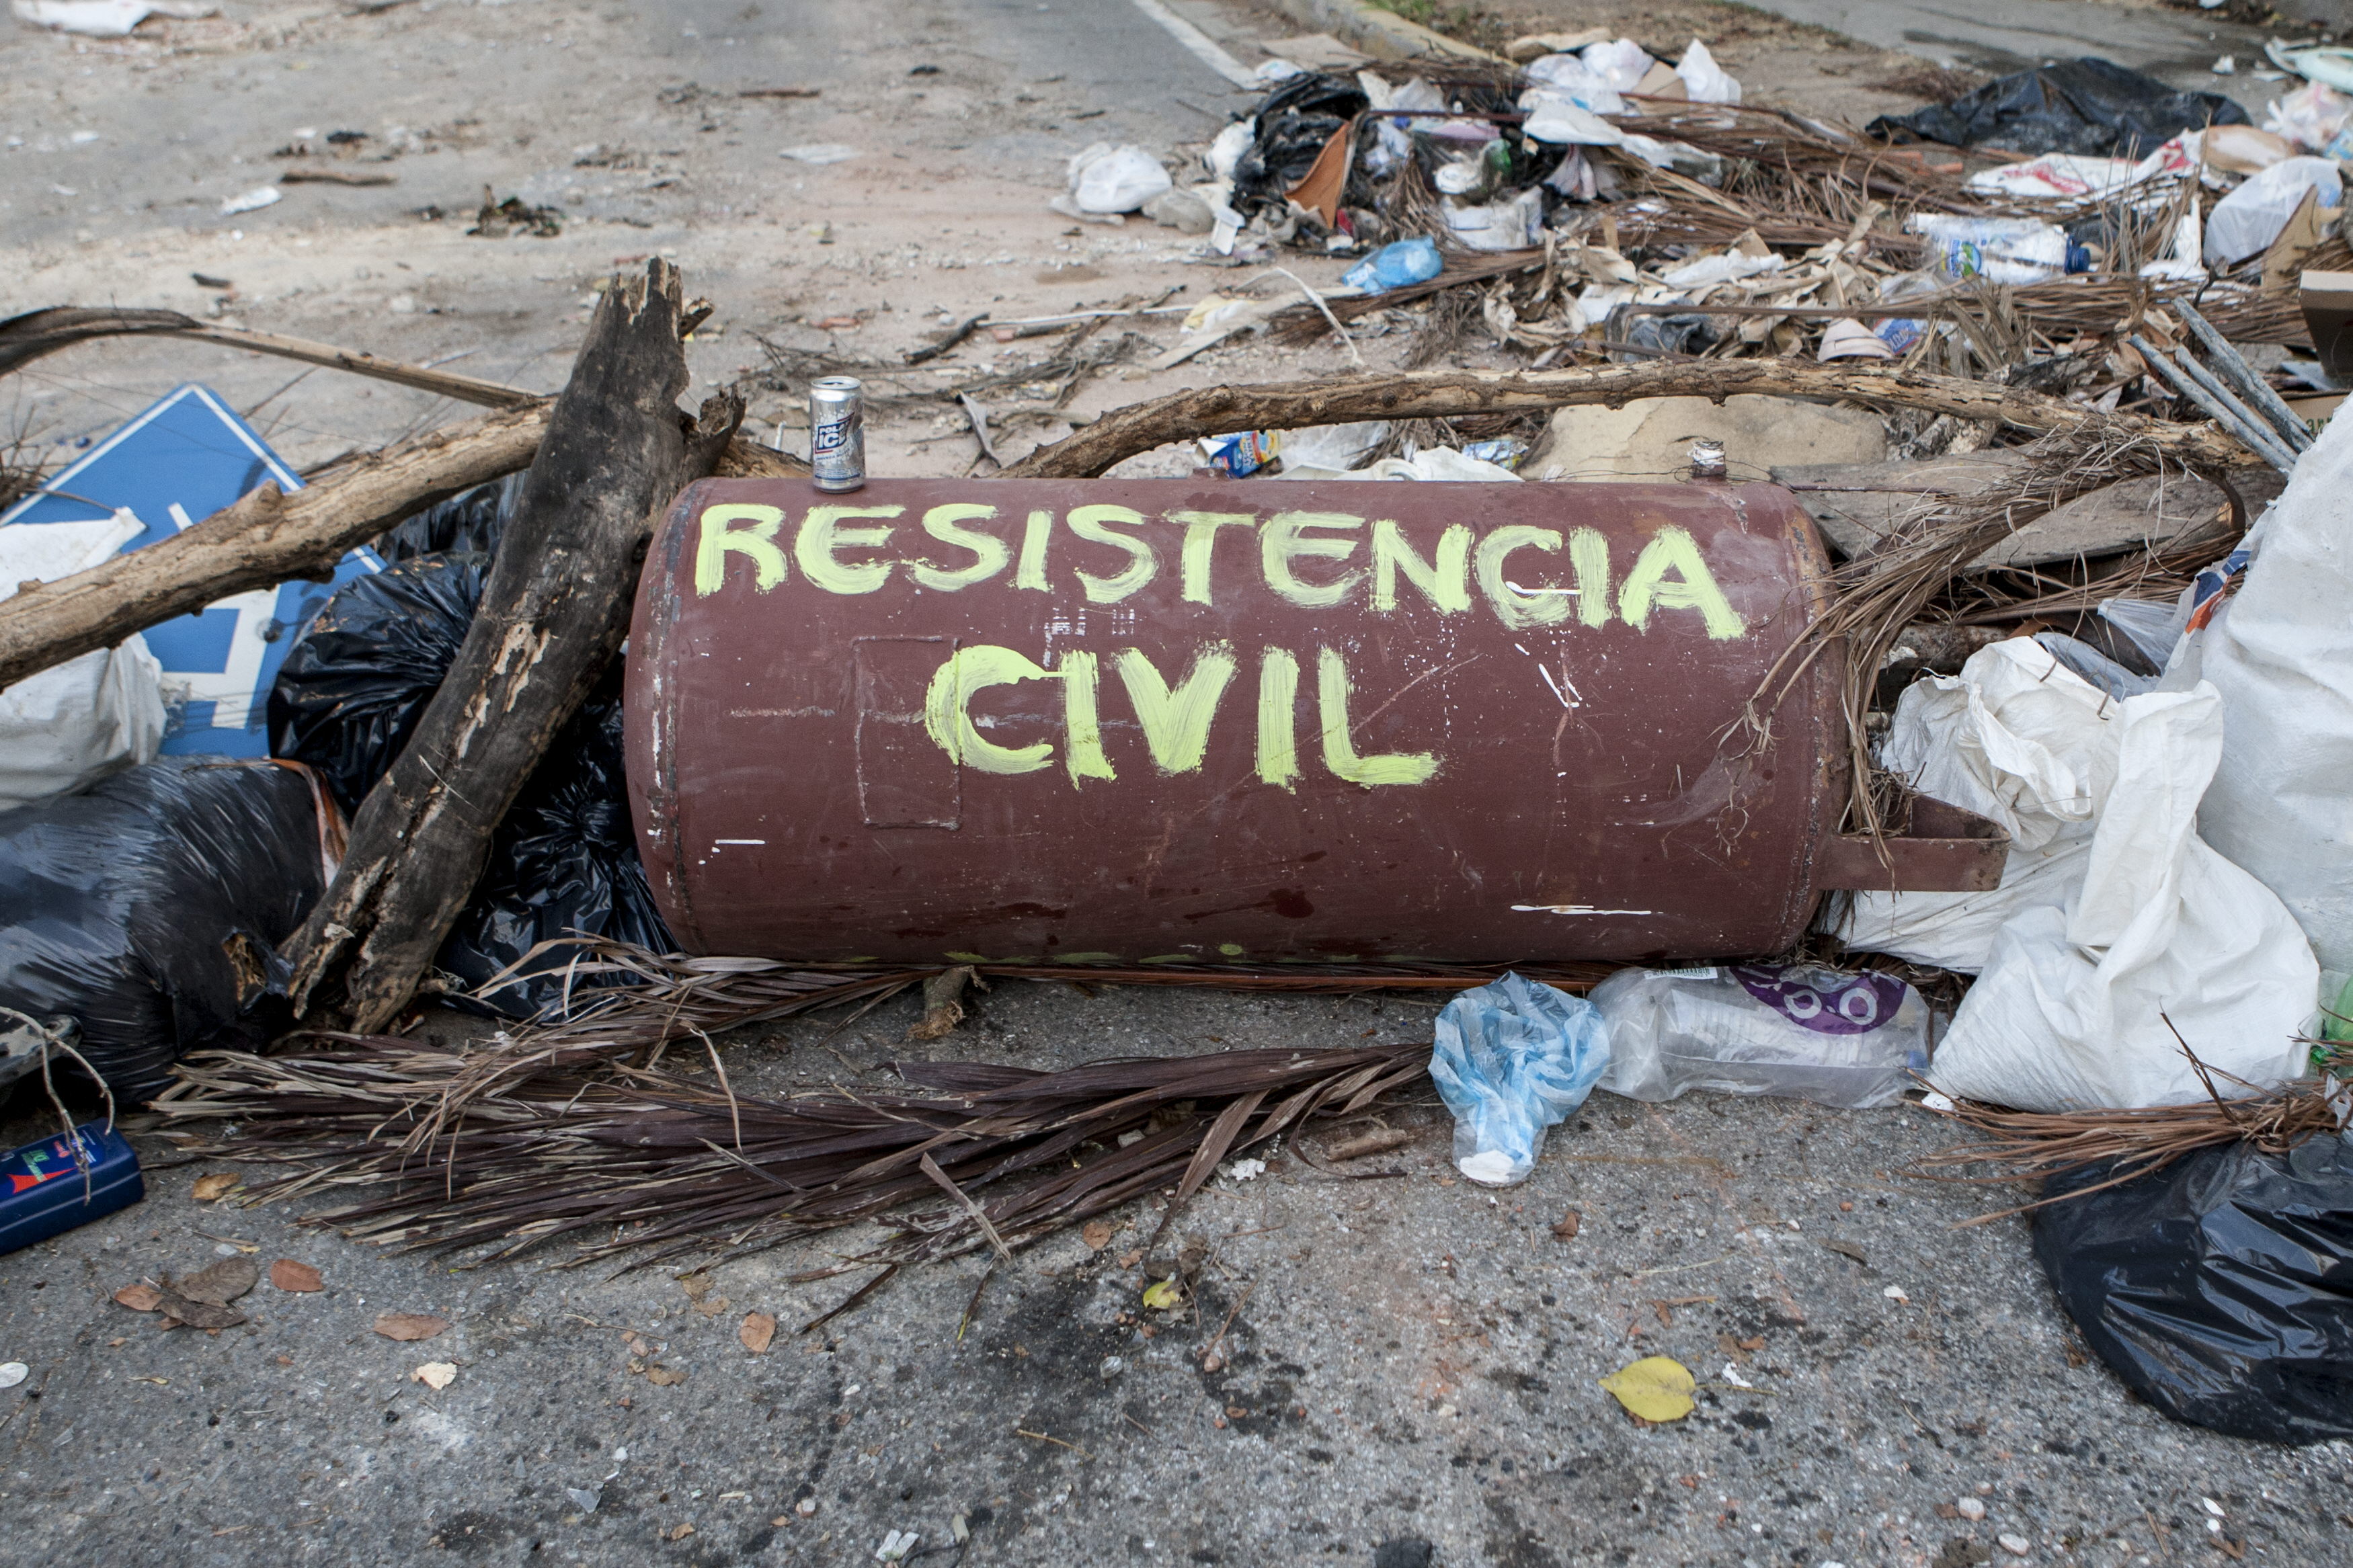 OVCS: Manifestaciones nocturnas y cerca de “centros de poder” cobran fuerza en Venezuela